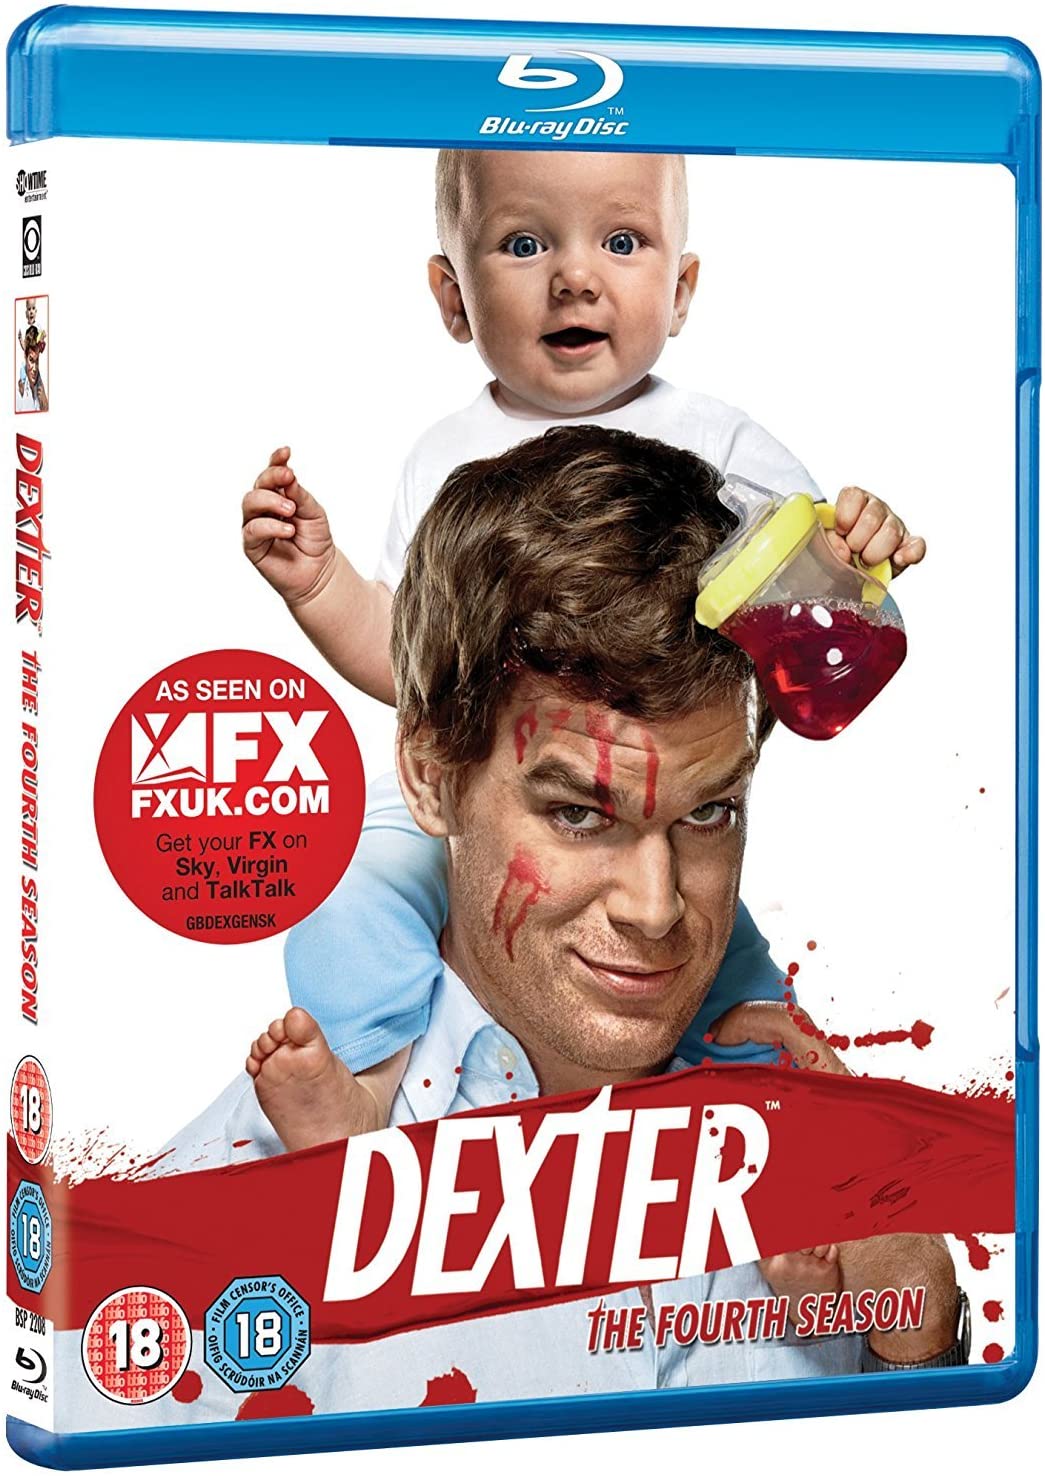 Dexter - Season 4 [Blu-ray] [2009] [Region Free]